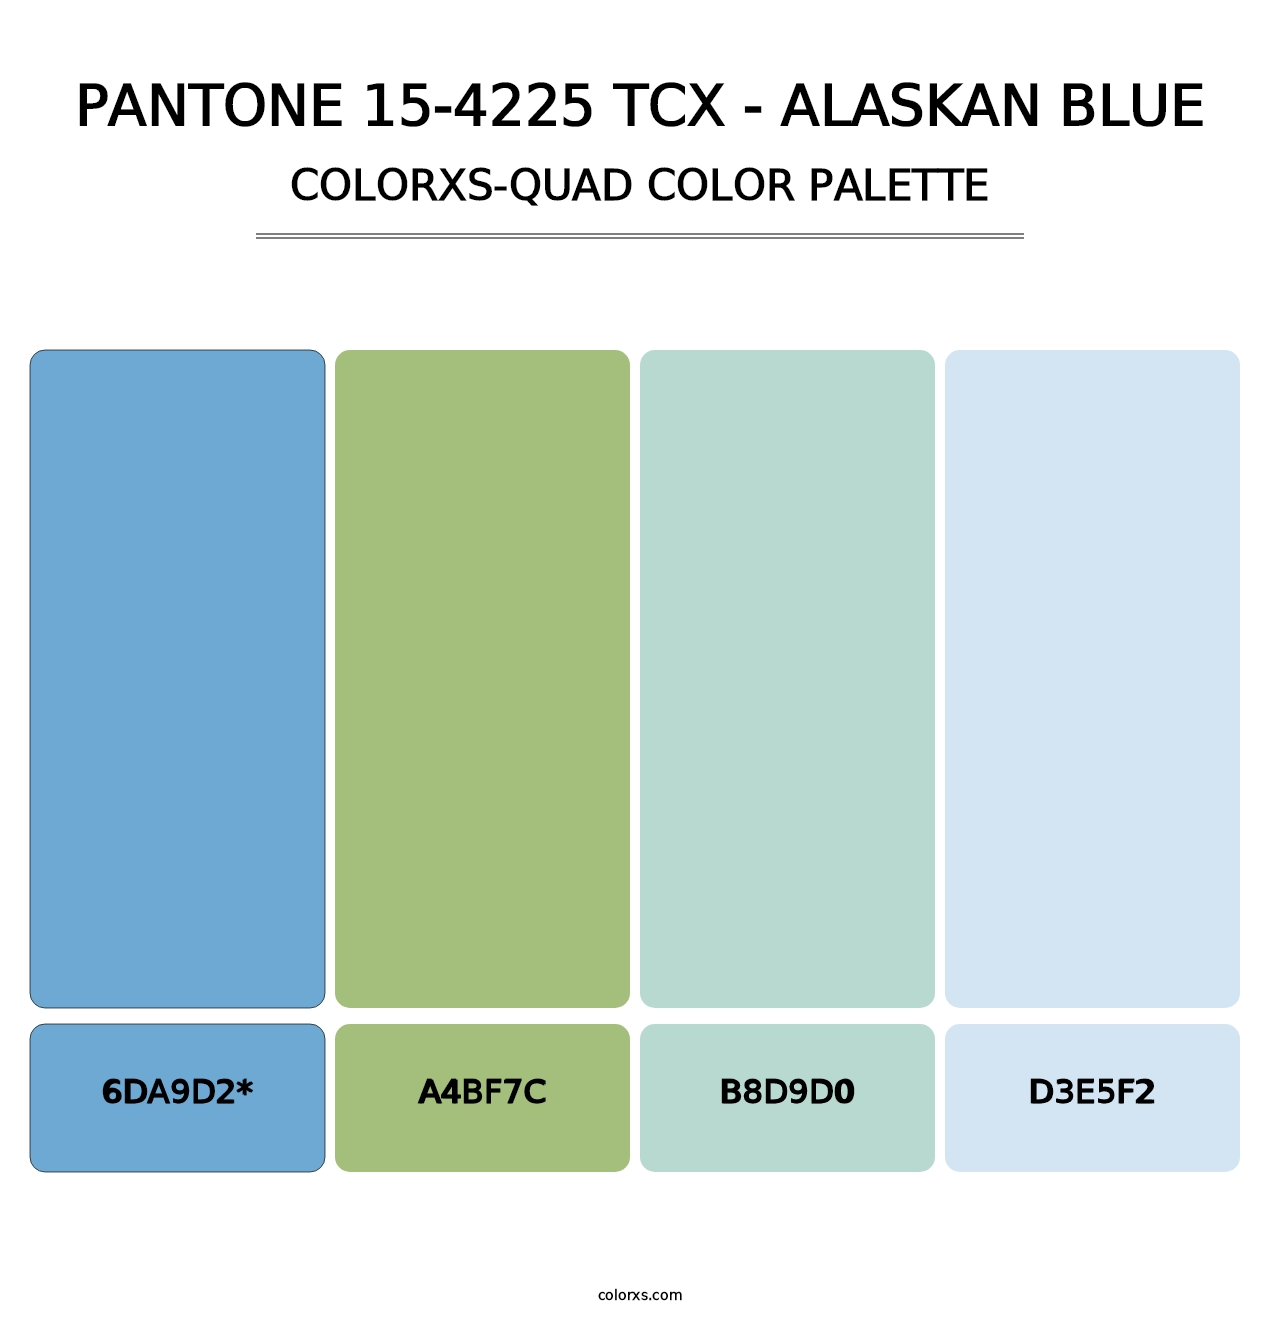 PANTONE 15-4225 TCX - Alaskan Blue - Colorxs Quad Palette